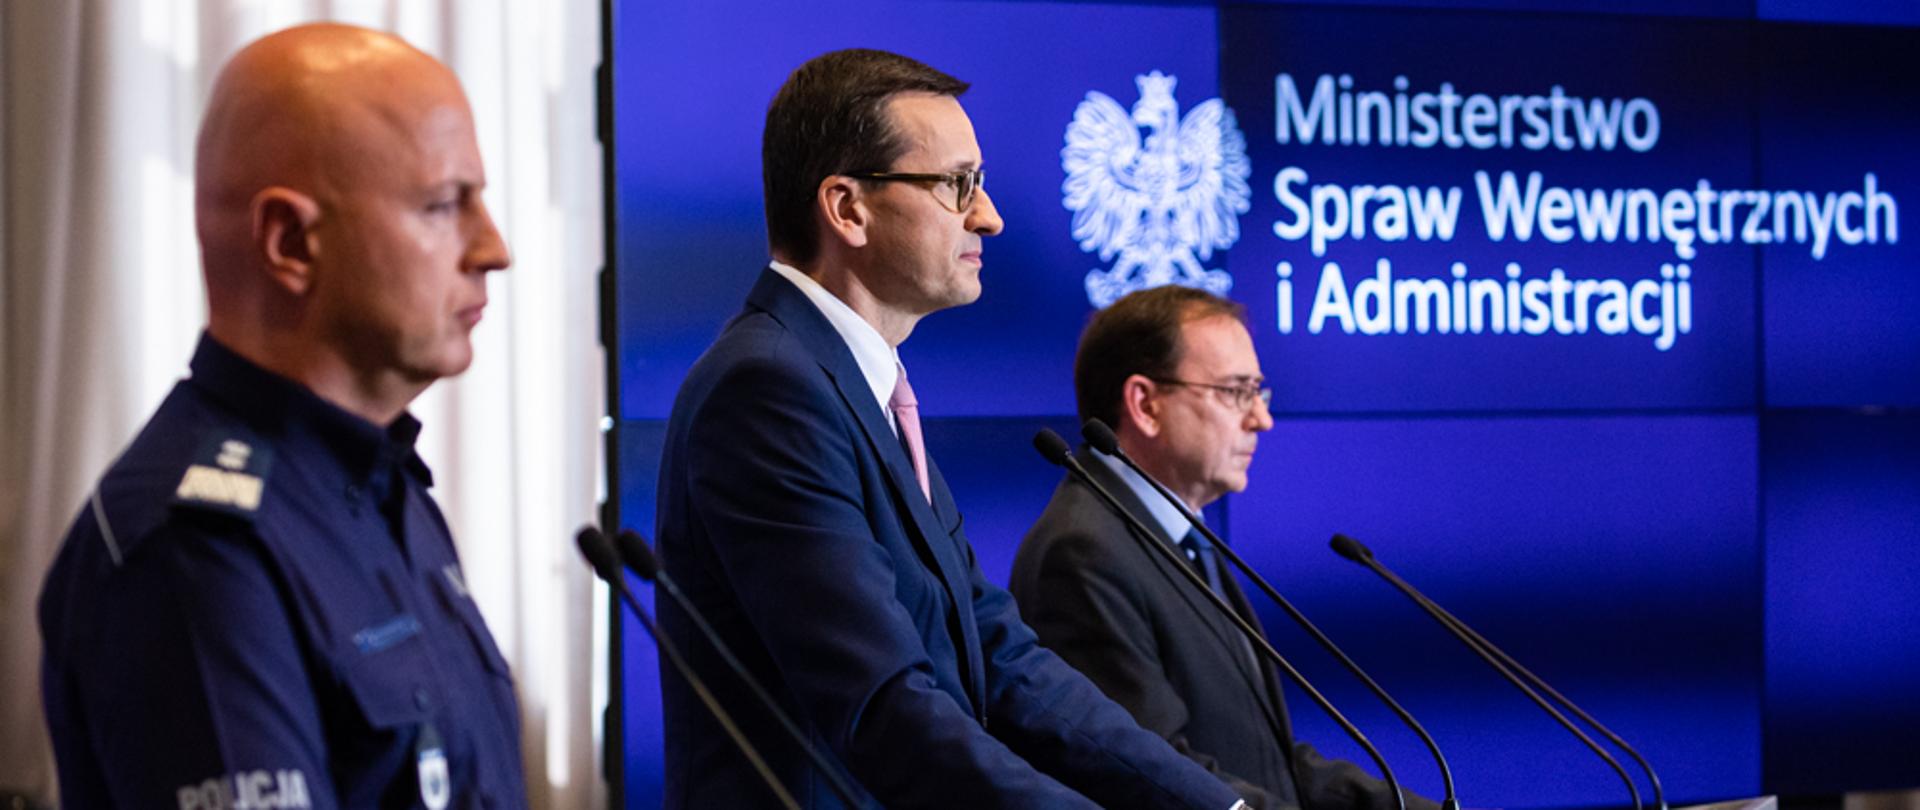 Od lewej: Jarosław Szymczyk, Mateusz Morawiecki, Mariusz Kamiński stoją podczas konferencji prasowej.